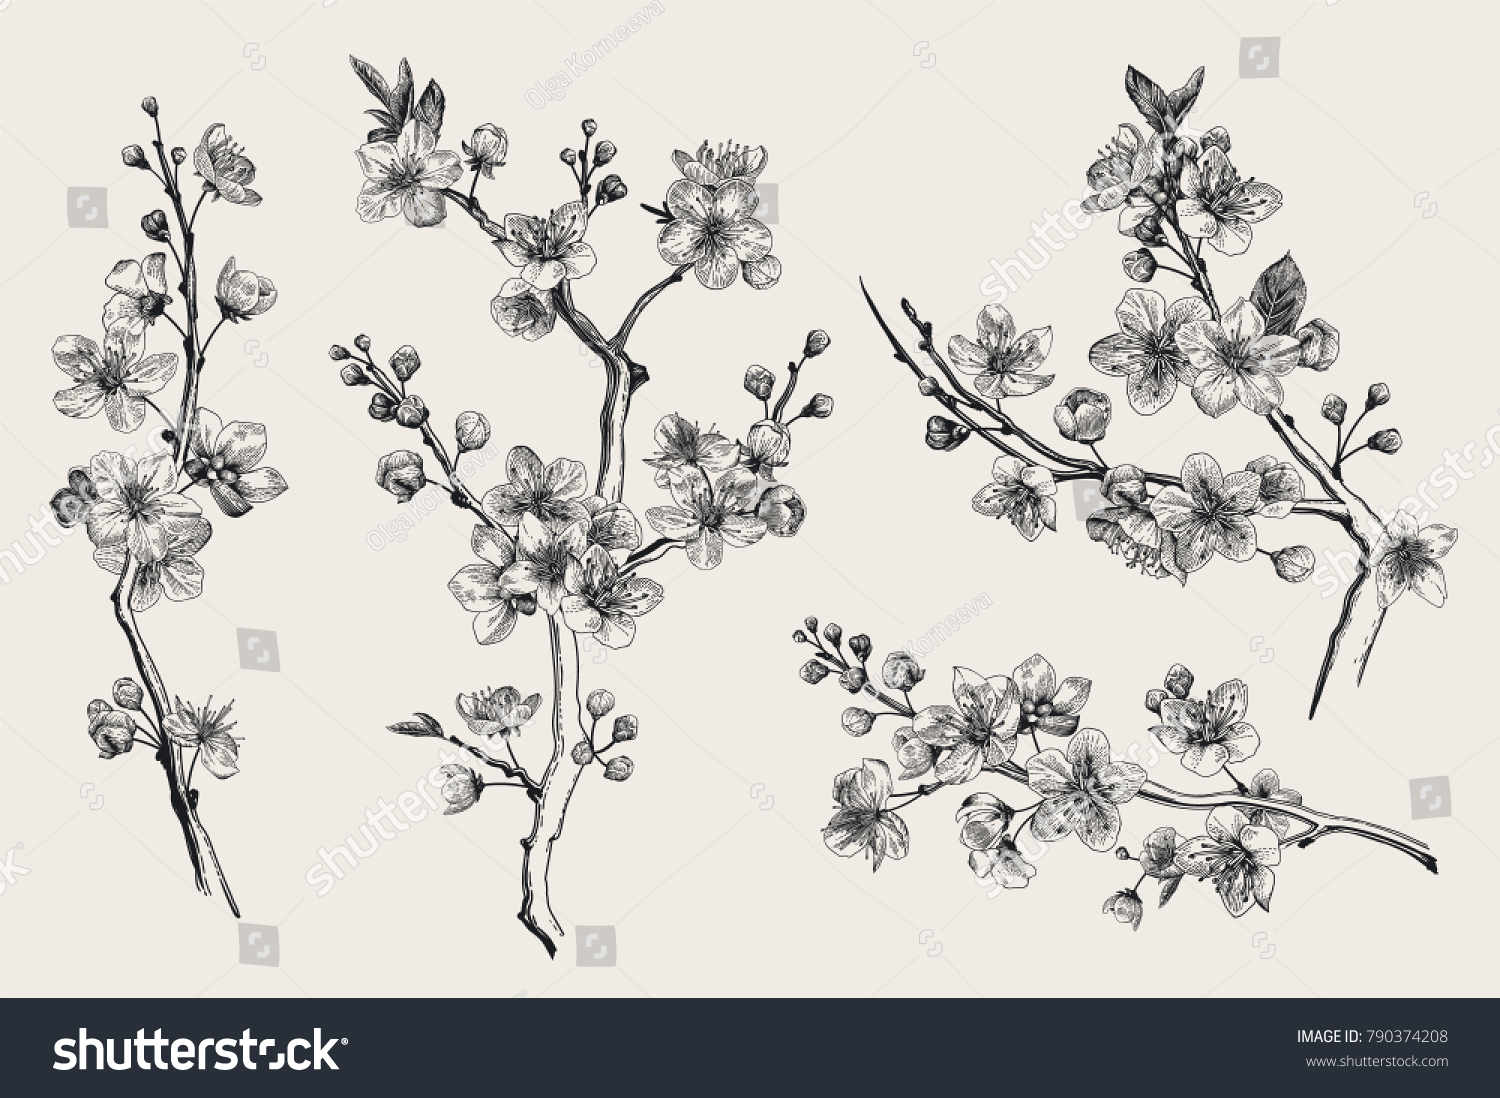 サクラ 桜の枝 ベクター植物イラスト 白黒 設定 のベクター画像素材 ロイヤリティフリー